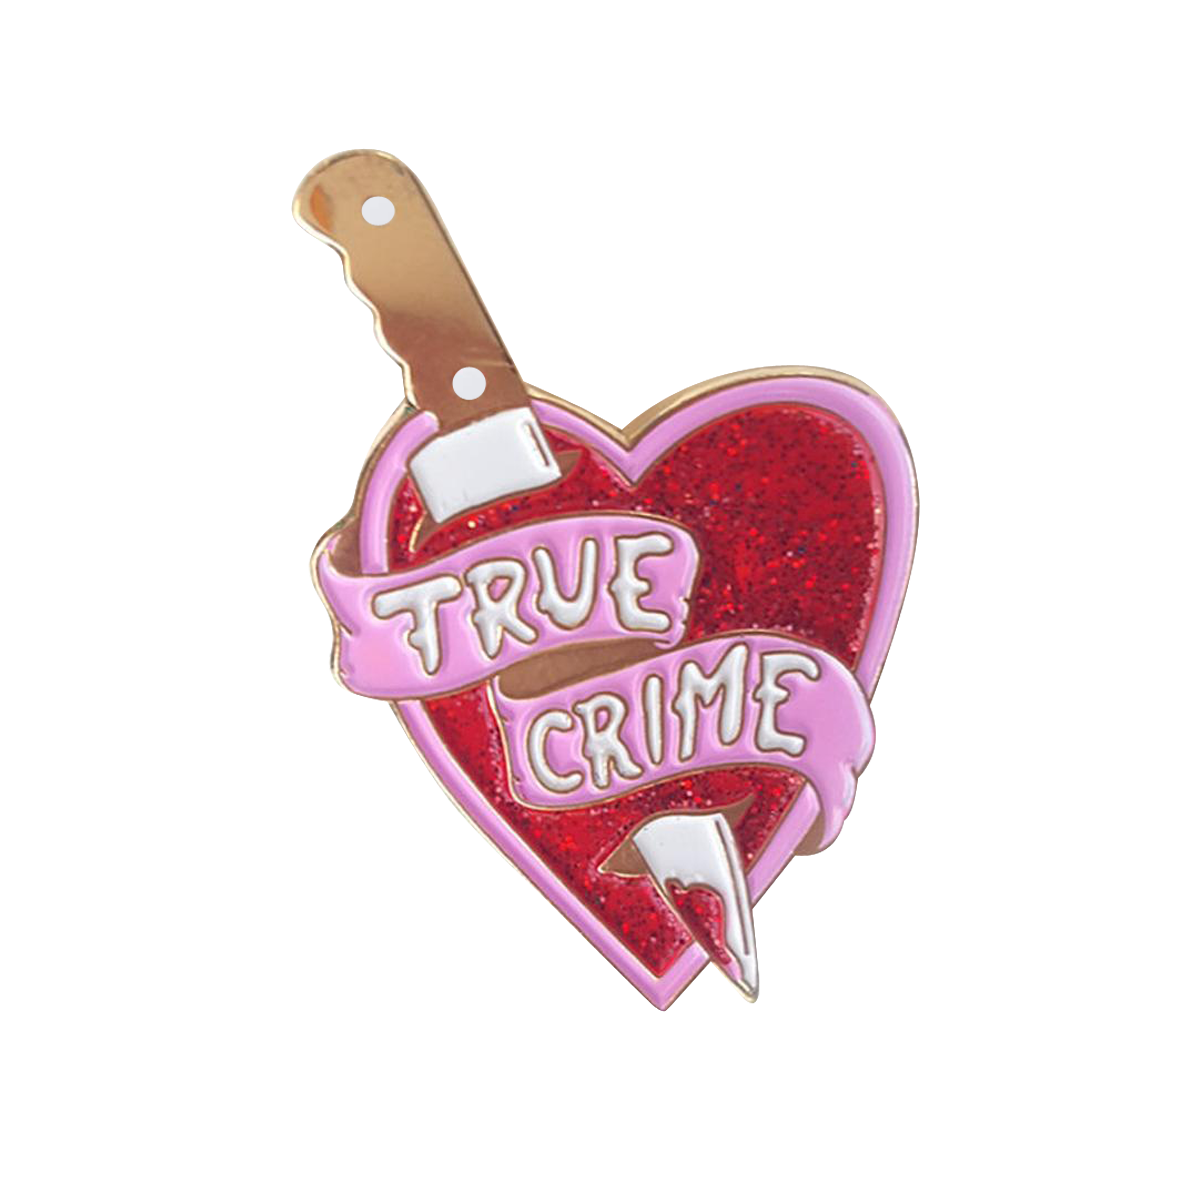 True Crime Pin